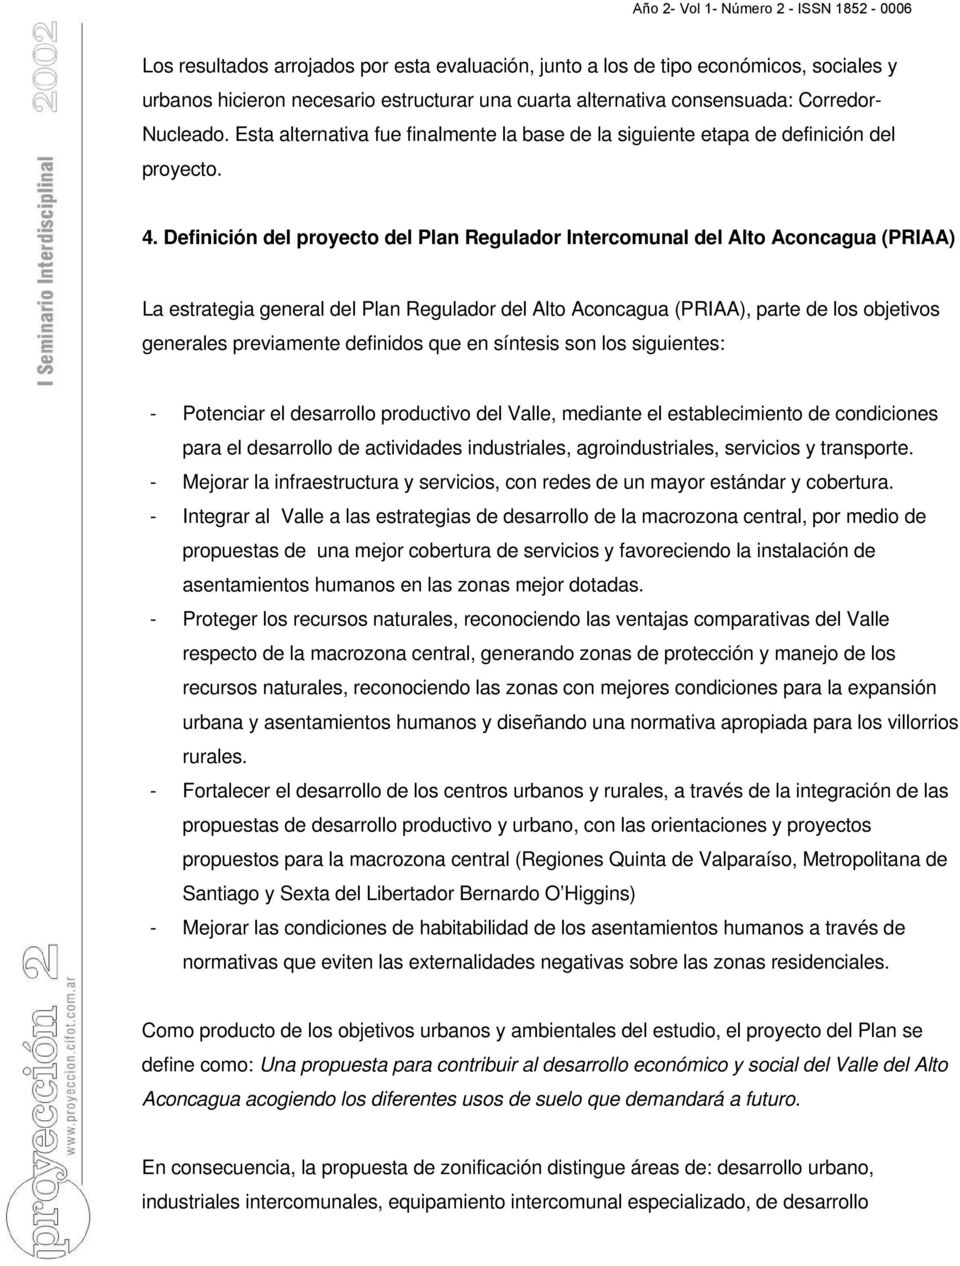 Definición del proyecto del Plan Regulador Intercomunal del Alto Aconcagua (PRIAA) La estrategia general del Plan Regulador del Alto Aconcagua (PRIAA), parte de los objetivos generales previamente